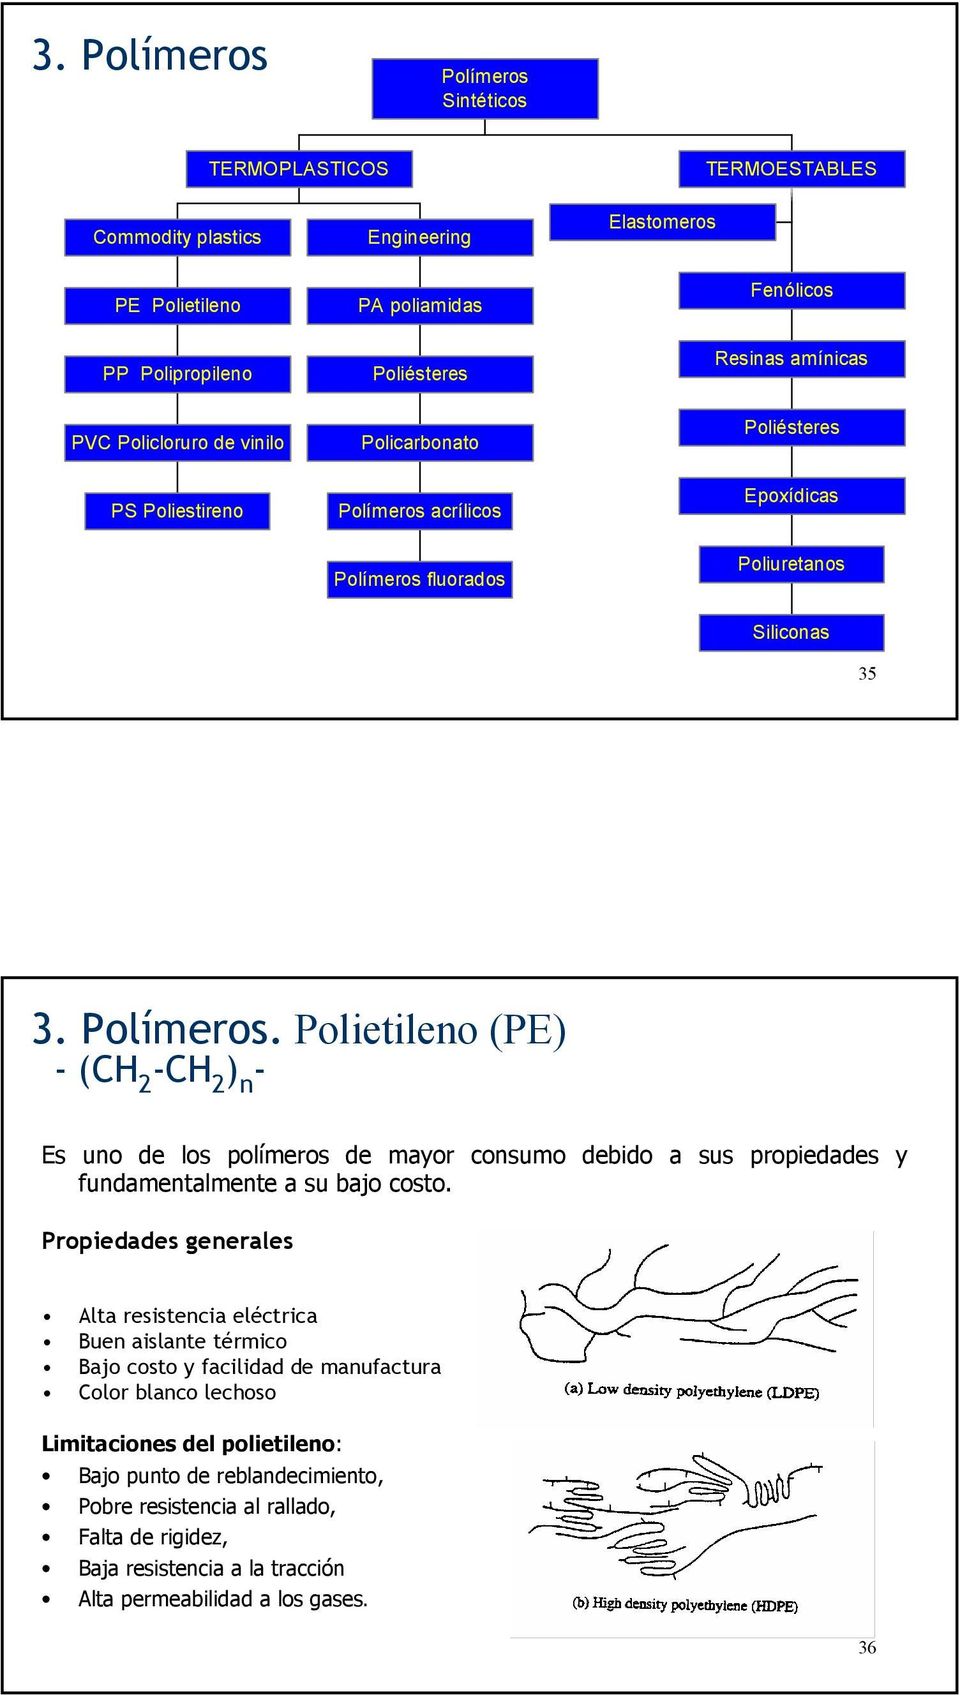 acrílicos Epoxídicas Polímeros fluorados Poliuretanos Siliconas 35 3. Polímeros. Polietileno (PE) -(CH 2 -CH 2 ) n - Es uno de los polímeros de mayor consumo debido a sus propiedades y fundamentalmente a su bajo costo.